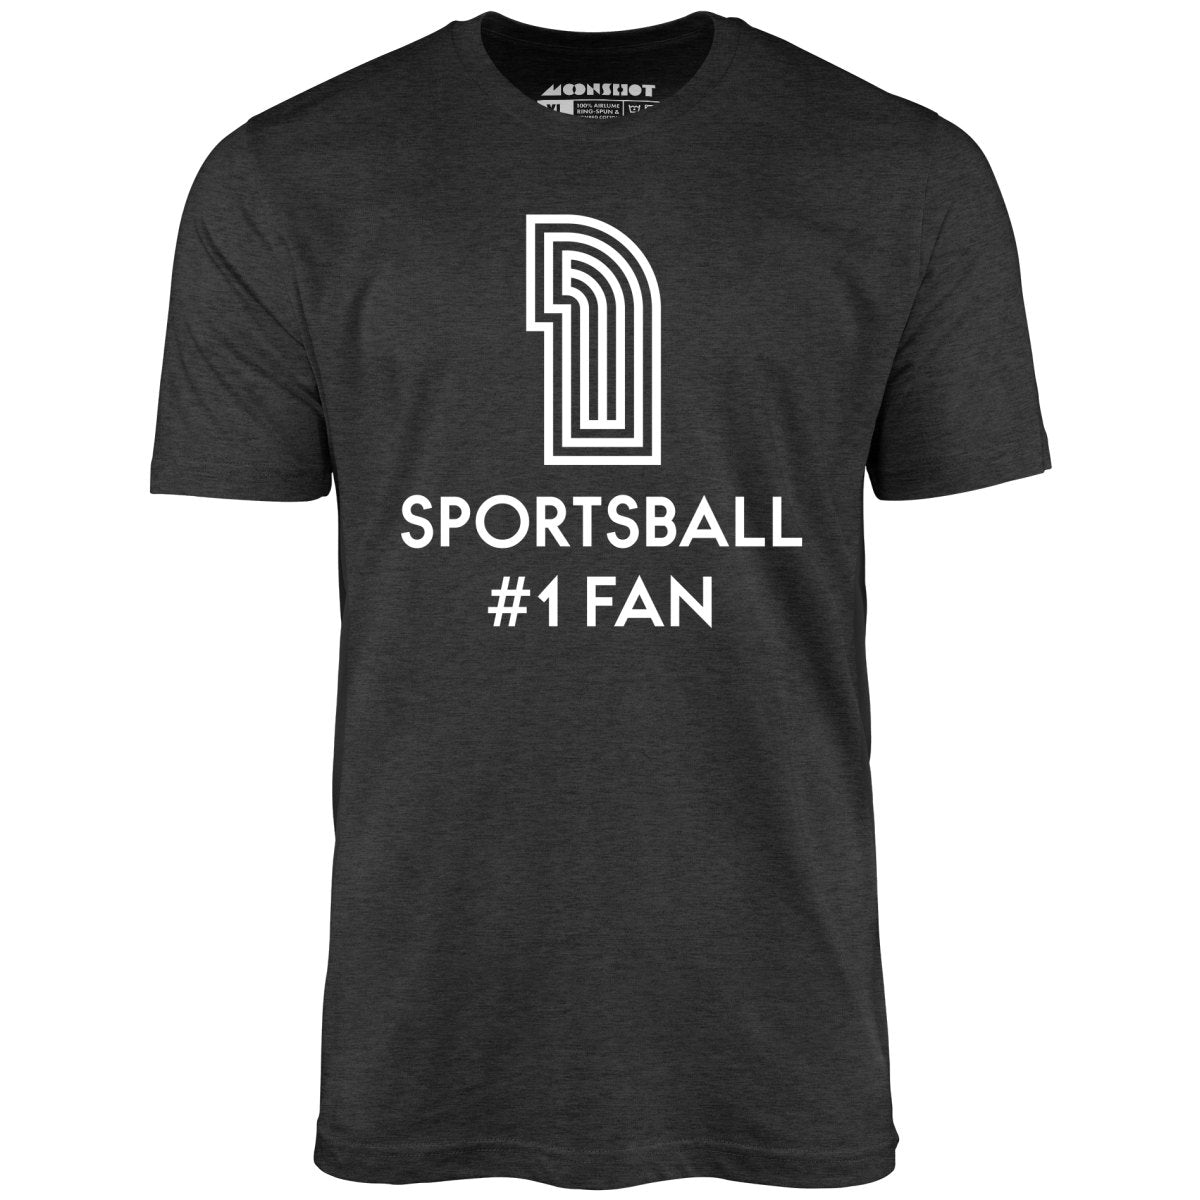 Sportsball #1 Fan - Unisex T-Shirt